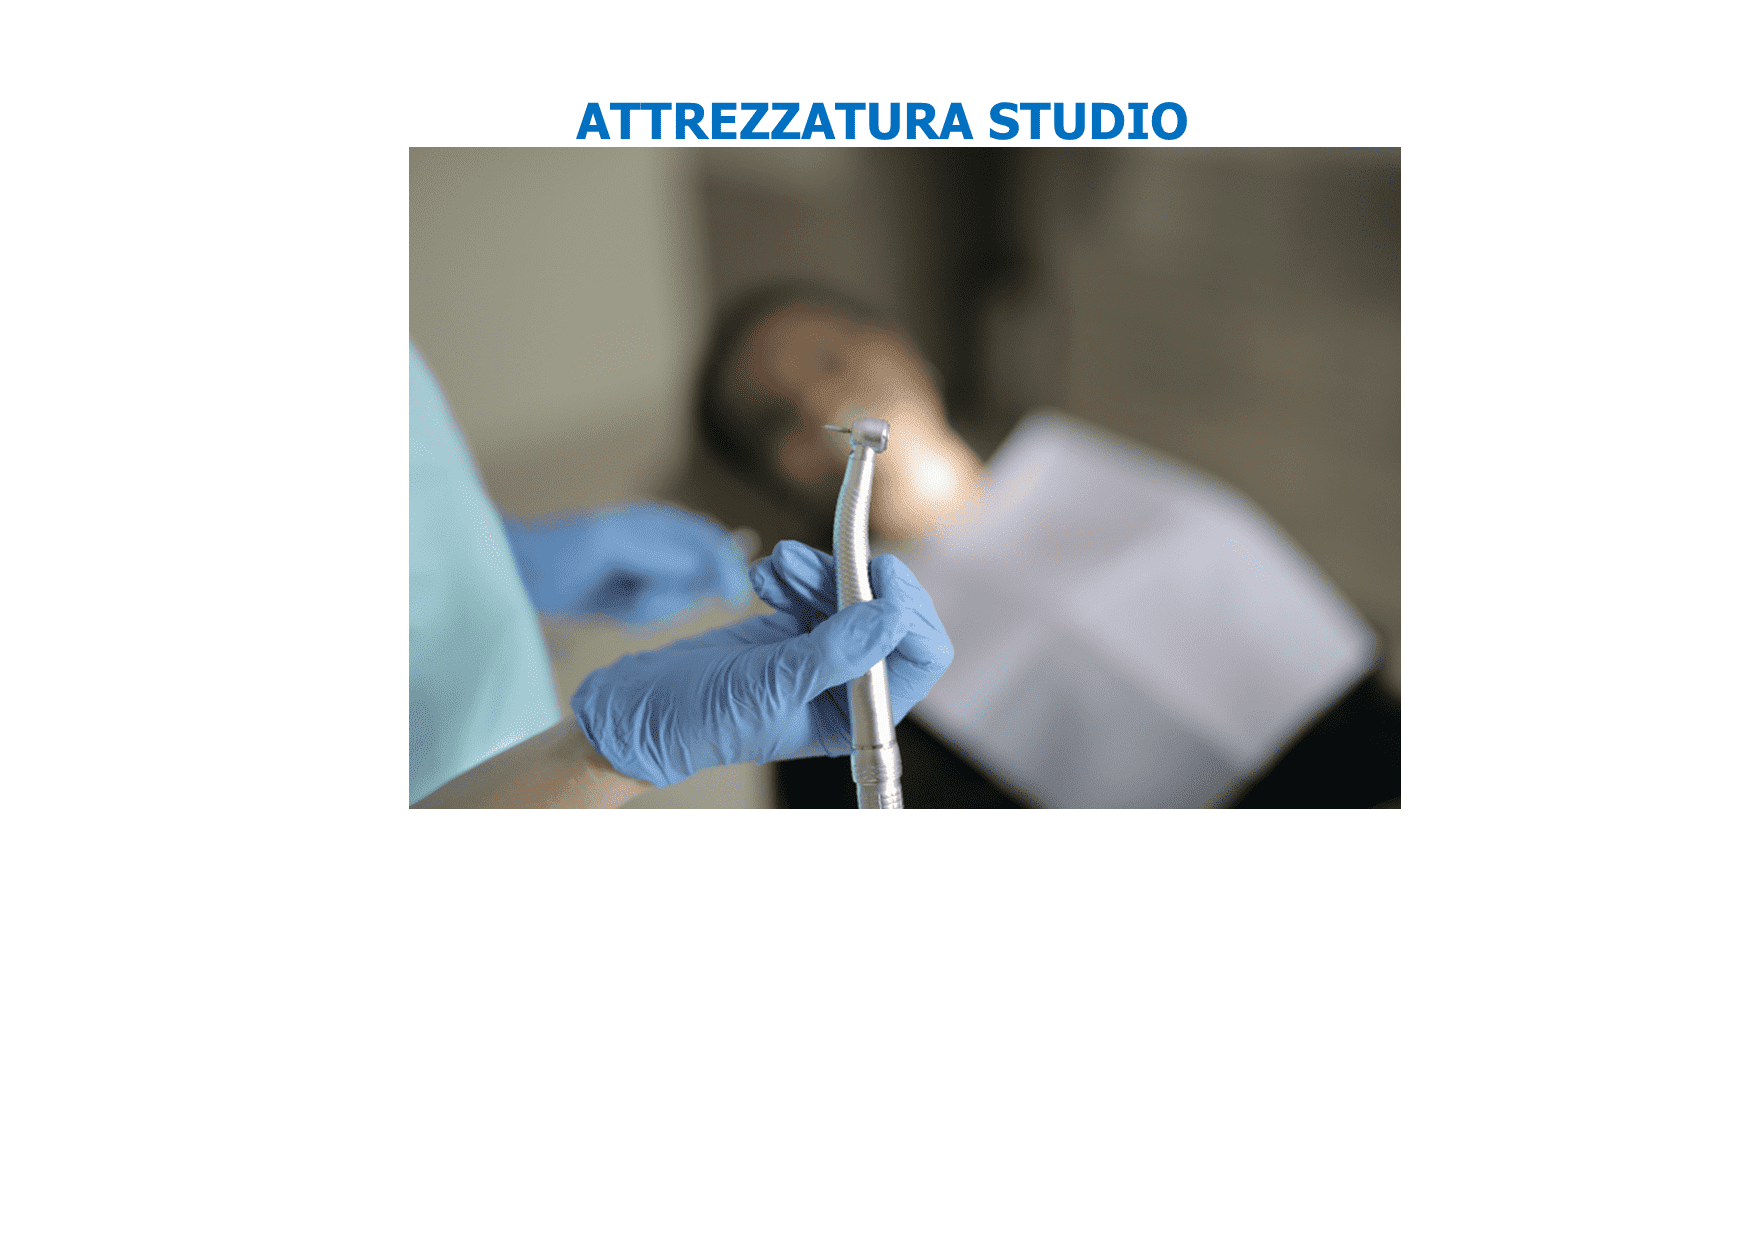 Attrezzature Studio